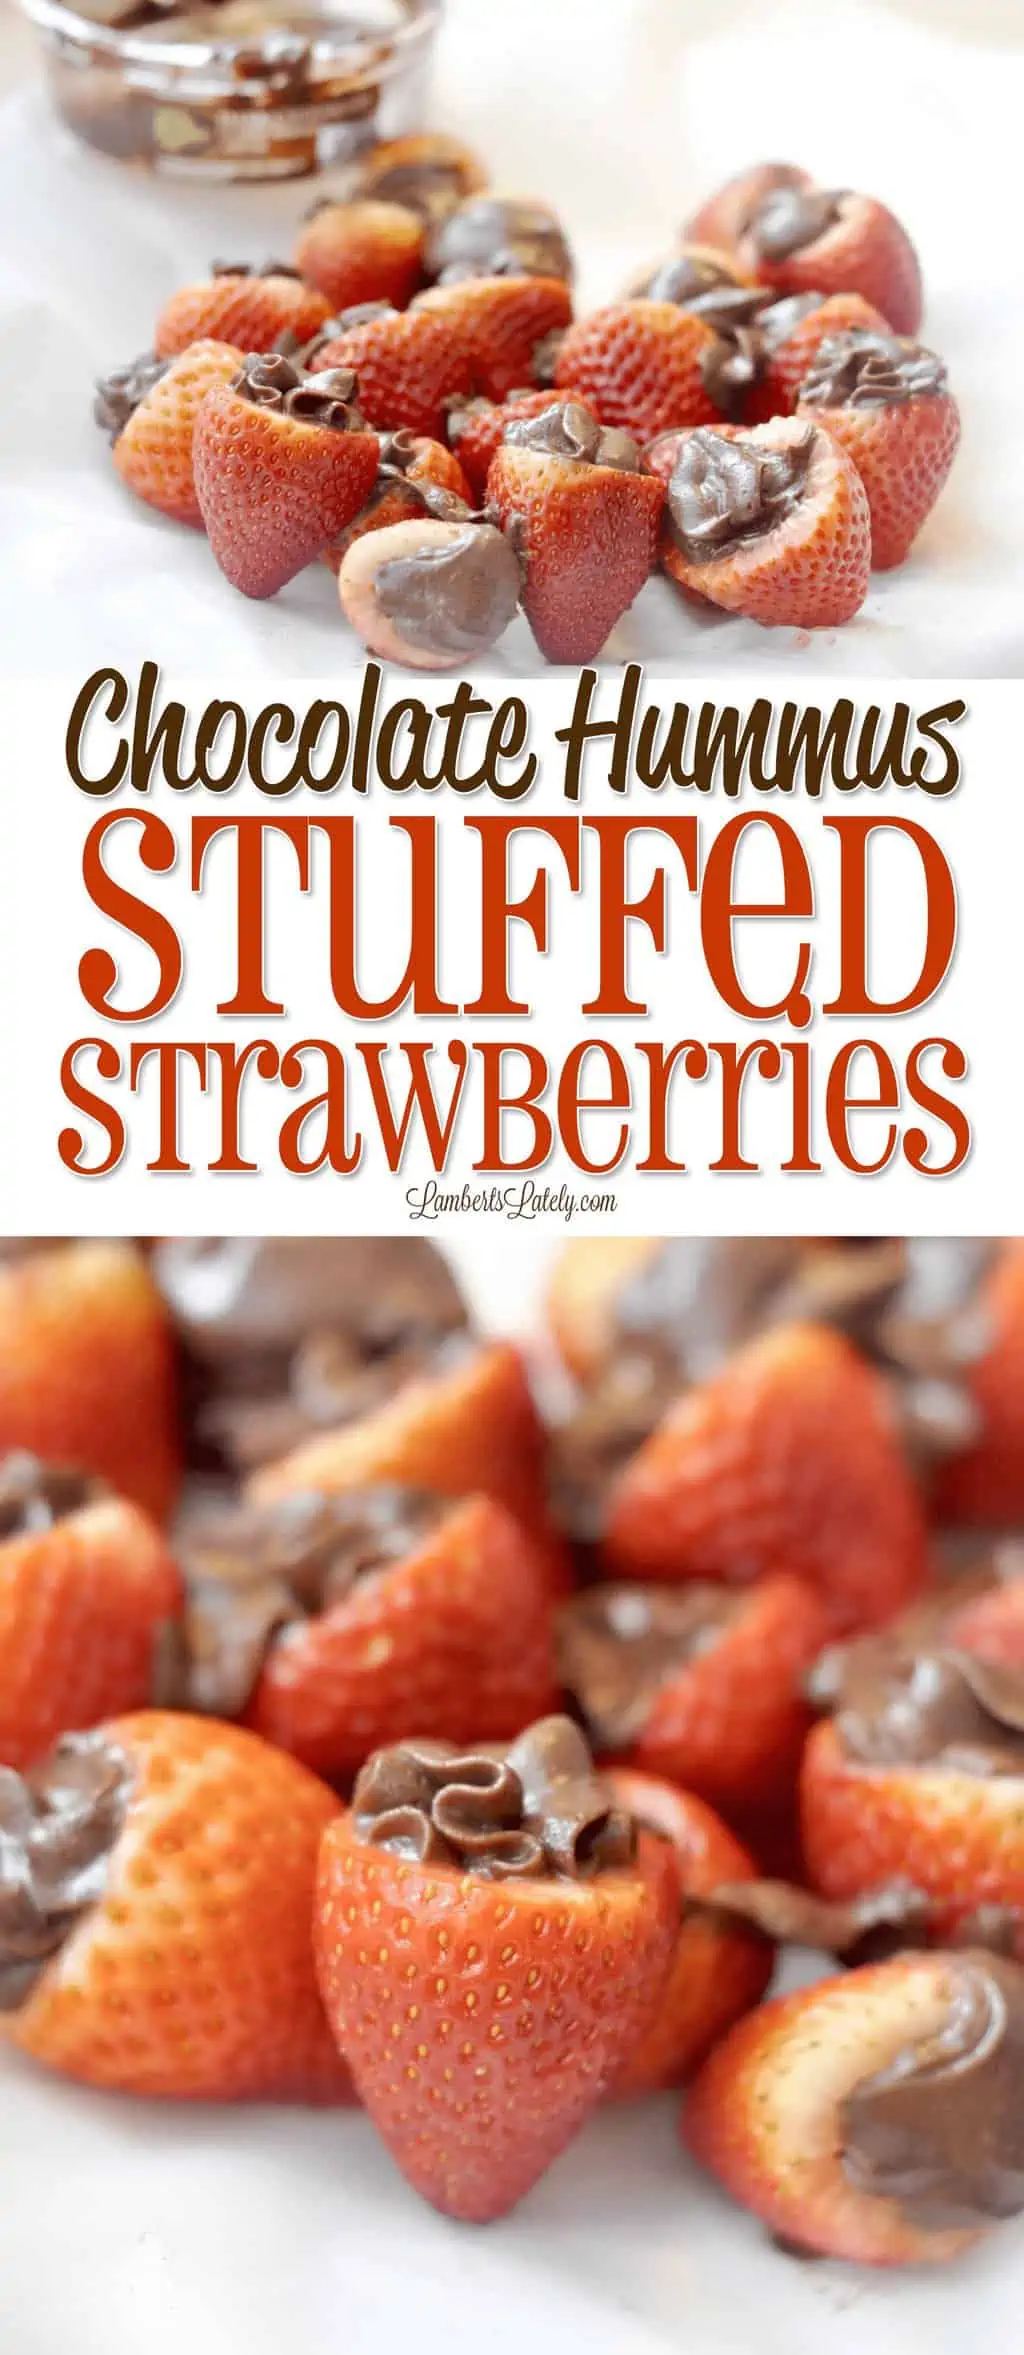 Chocolate Hummus Stuffed Strawberries.